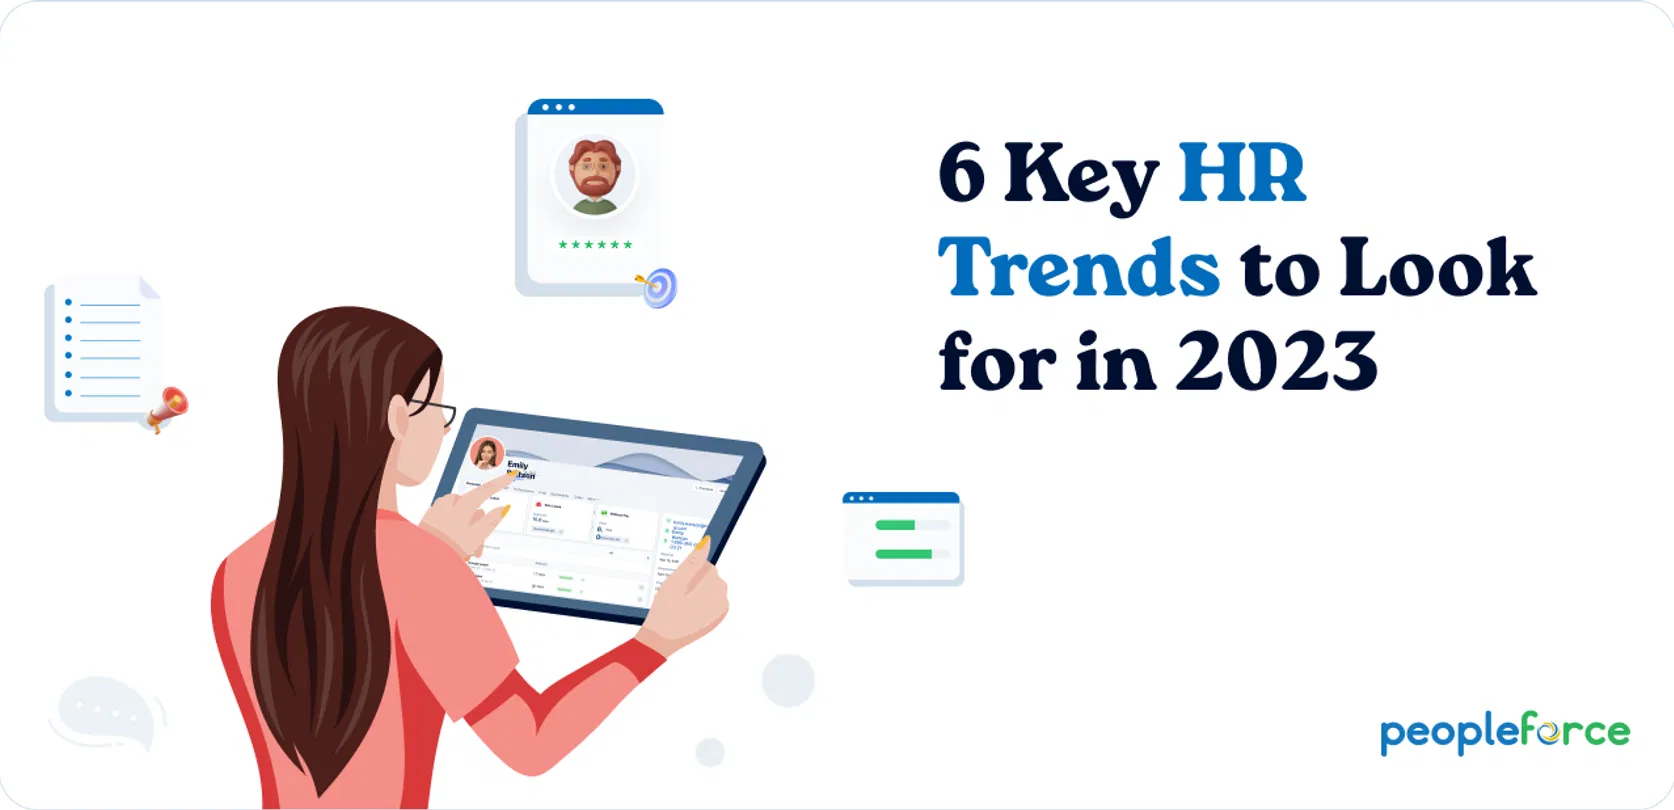 Six key HR tendencies to look for in 2023